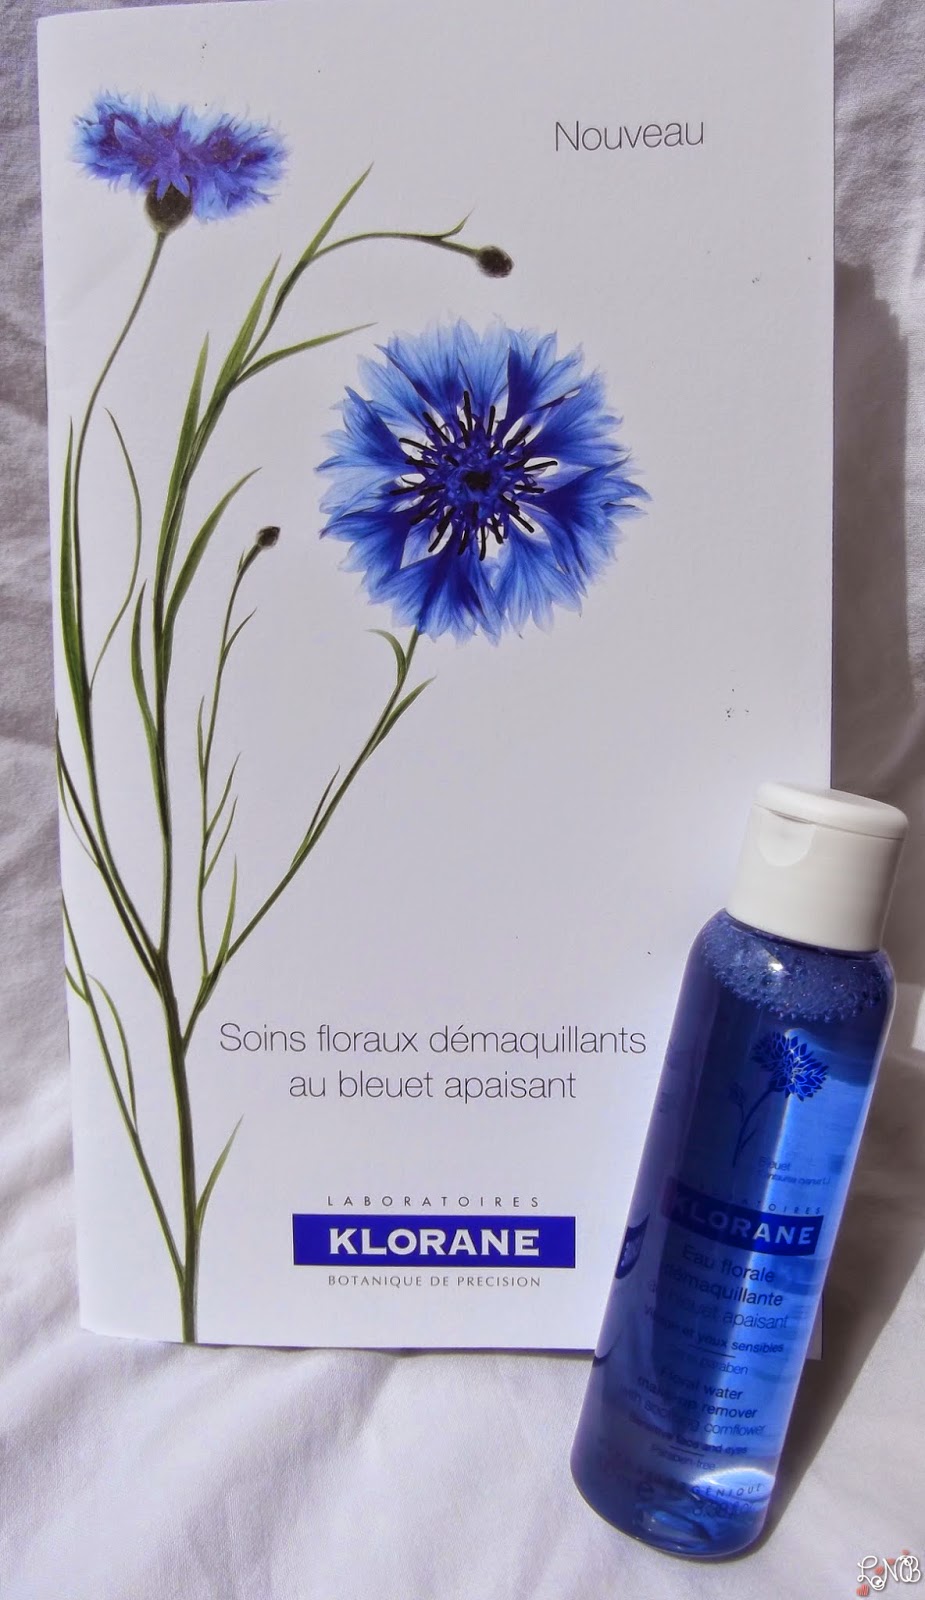 KLORANE Eau Florale Démaquillante au Bleuet apaisant.